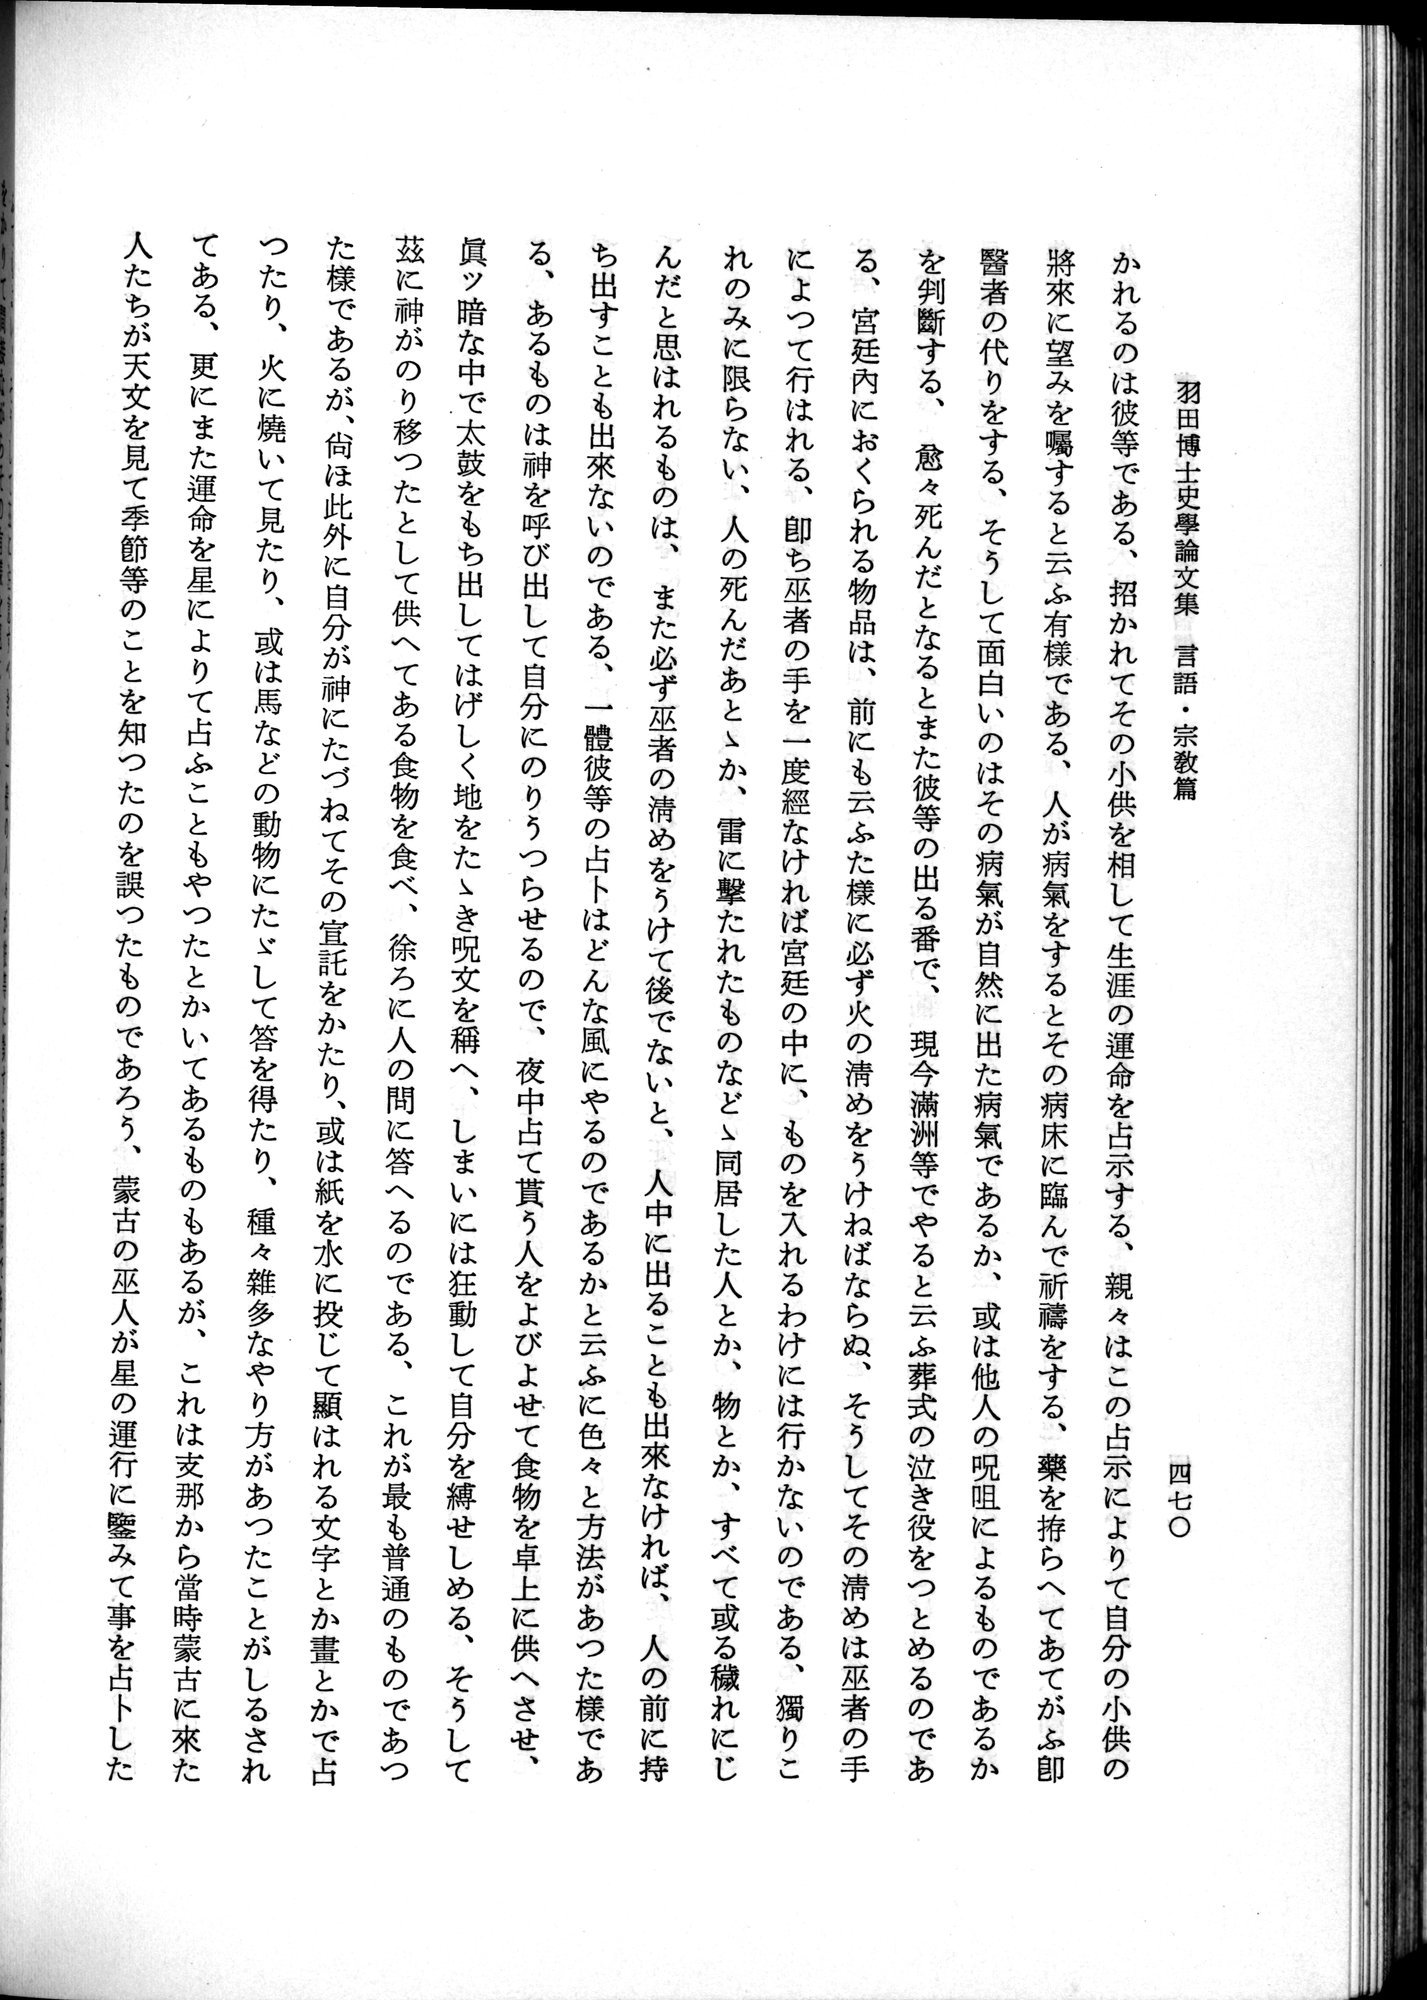 羽田博士史学論文集 : vol.2 / Page 532 (Grayscale High Resolution Image)